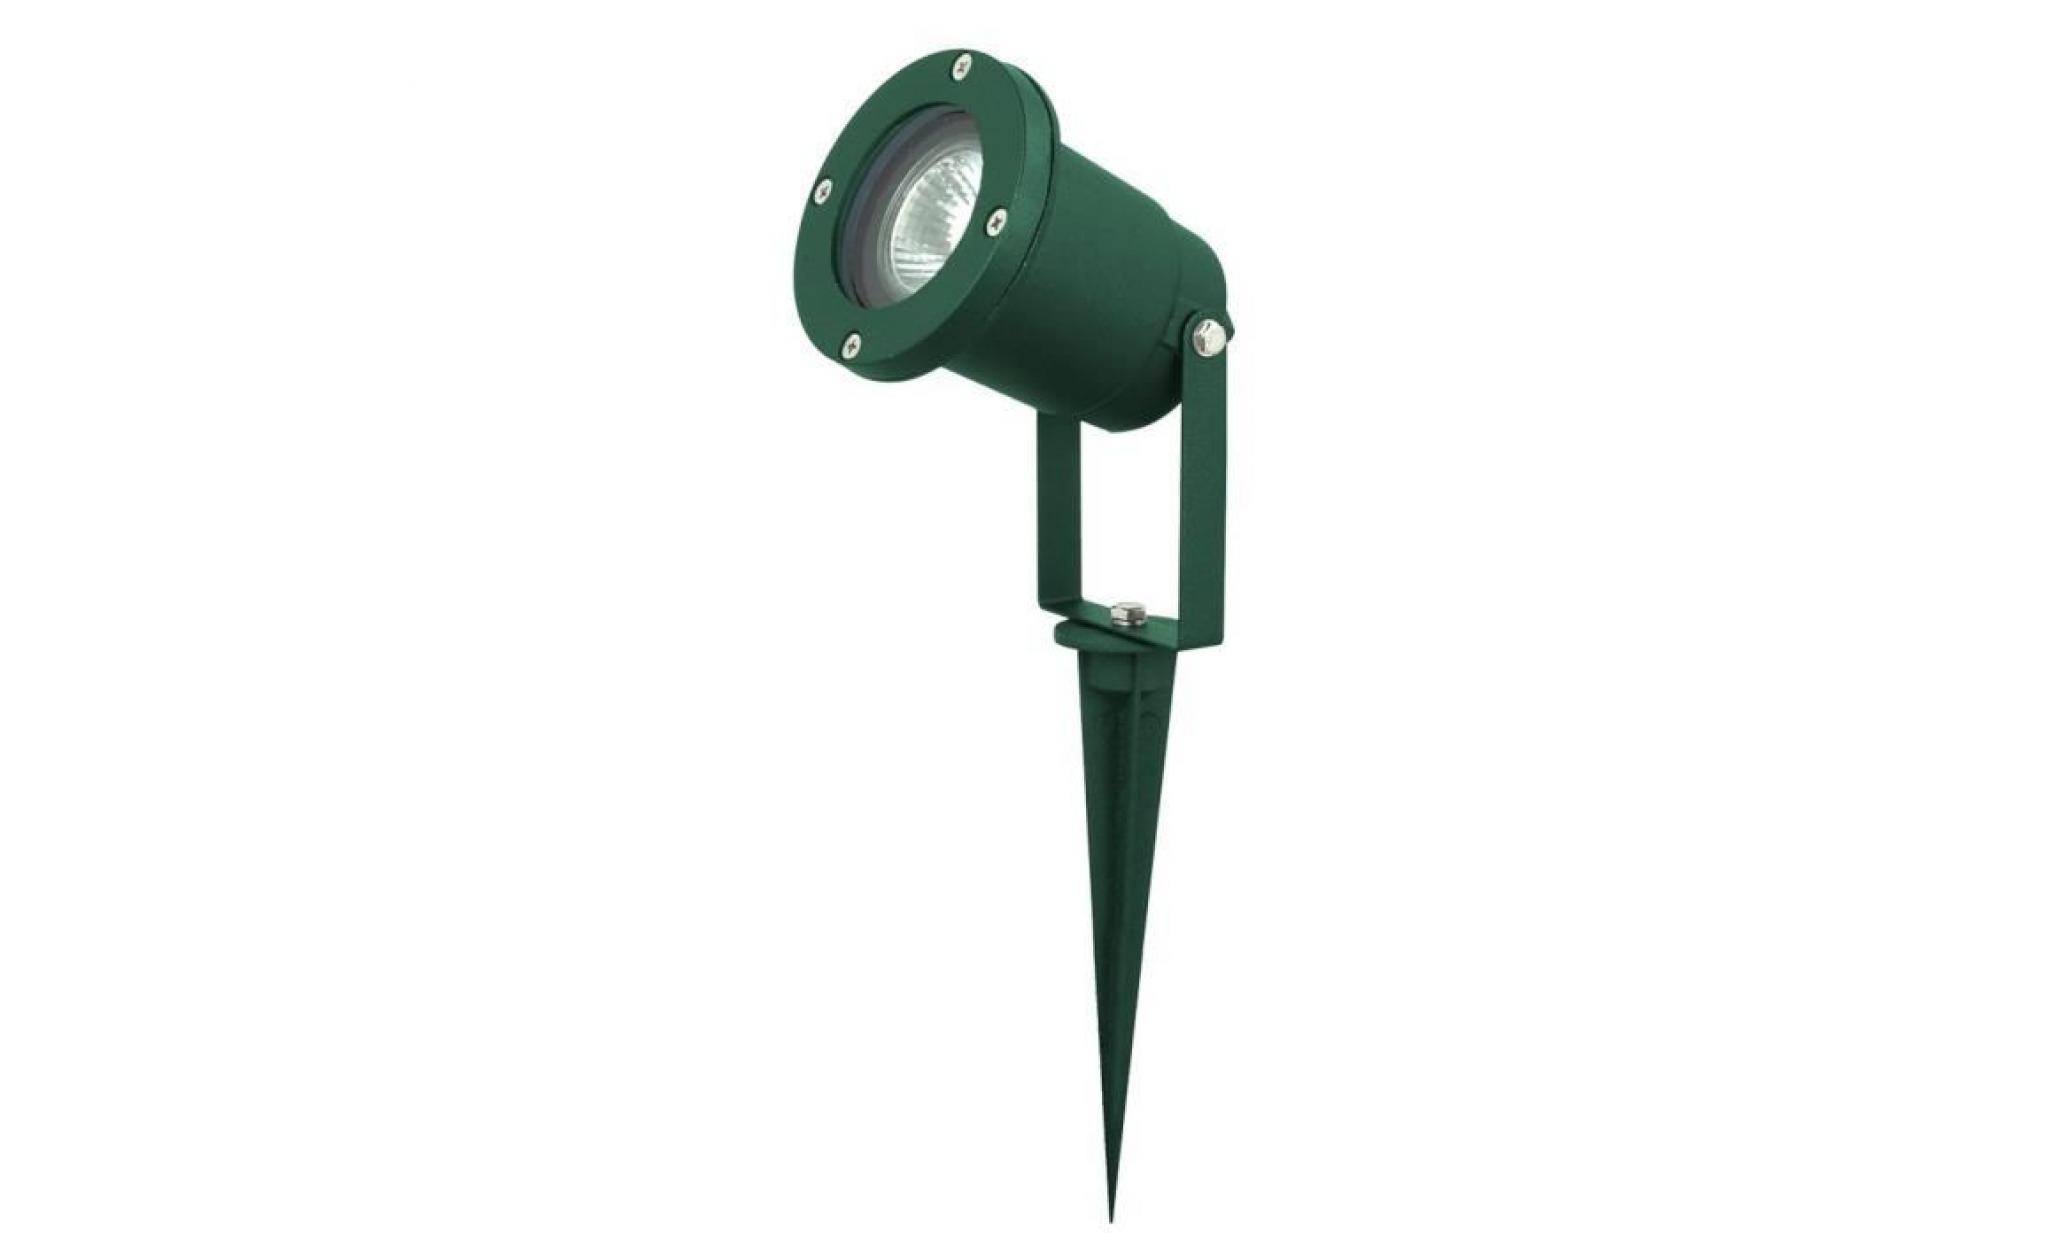 Lampadaire luminaire extérieur borne à piquer terrasse jardin aluminium vert IP44 Harms 103101 pas cher